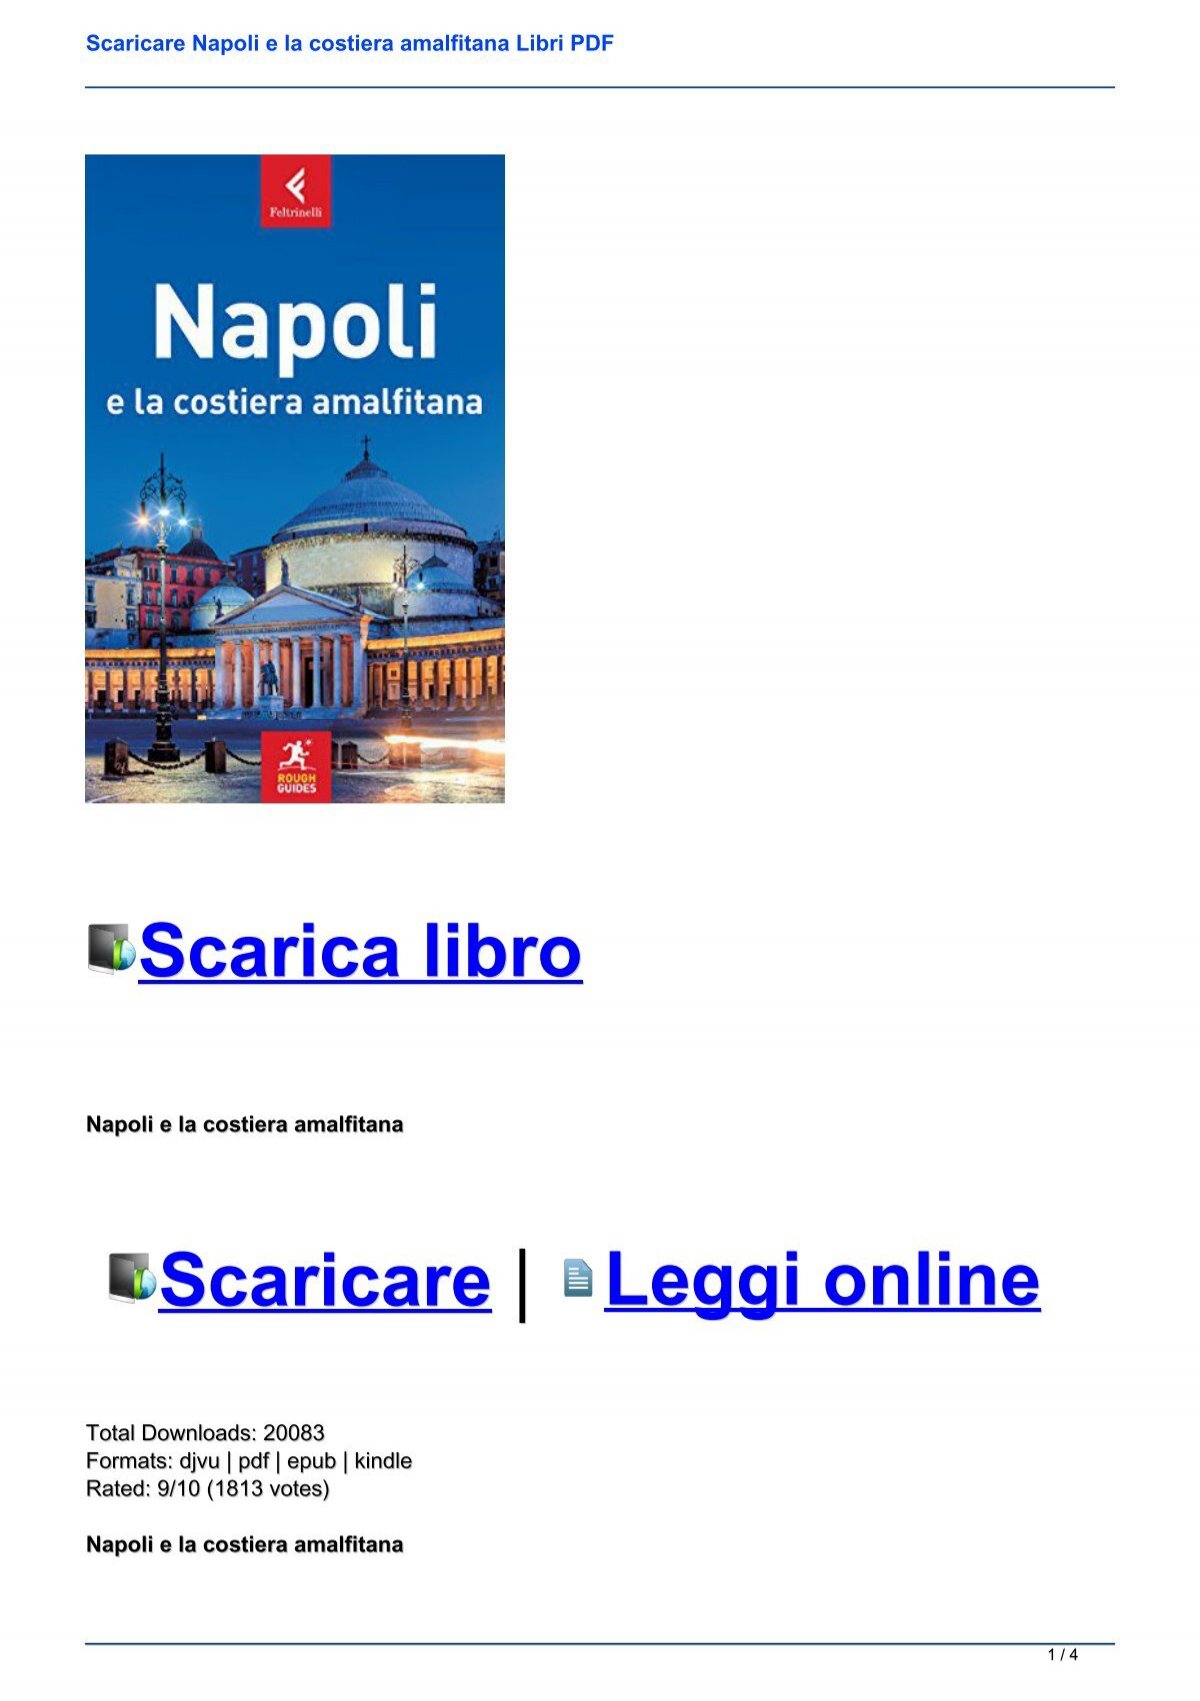 Scaricare Napoli E La Costiera Amalfitana Libri Pdf